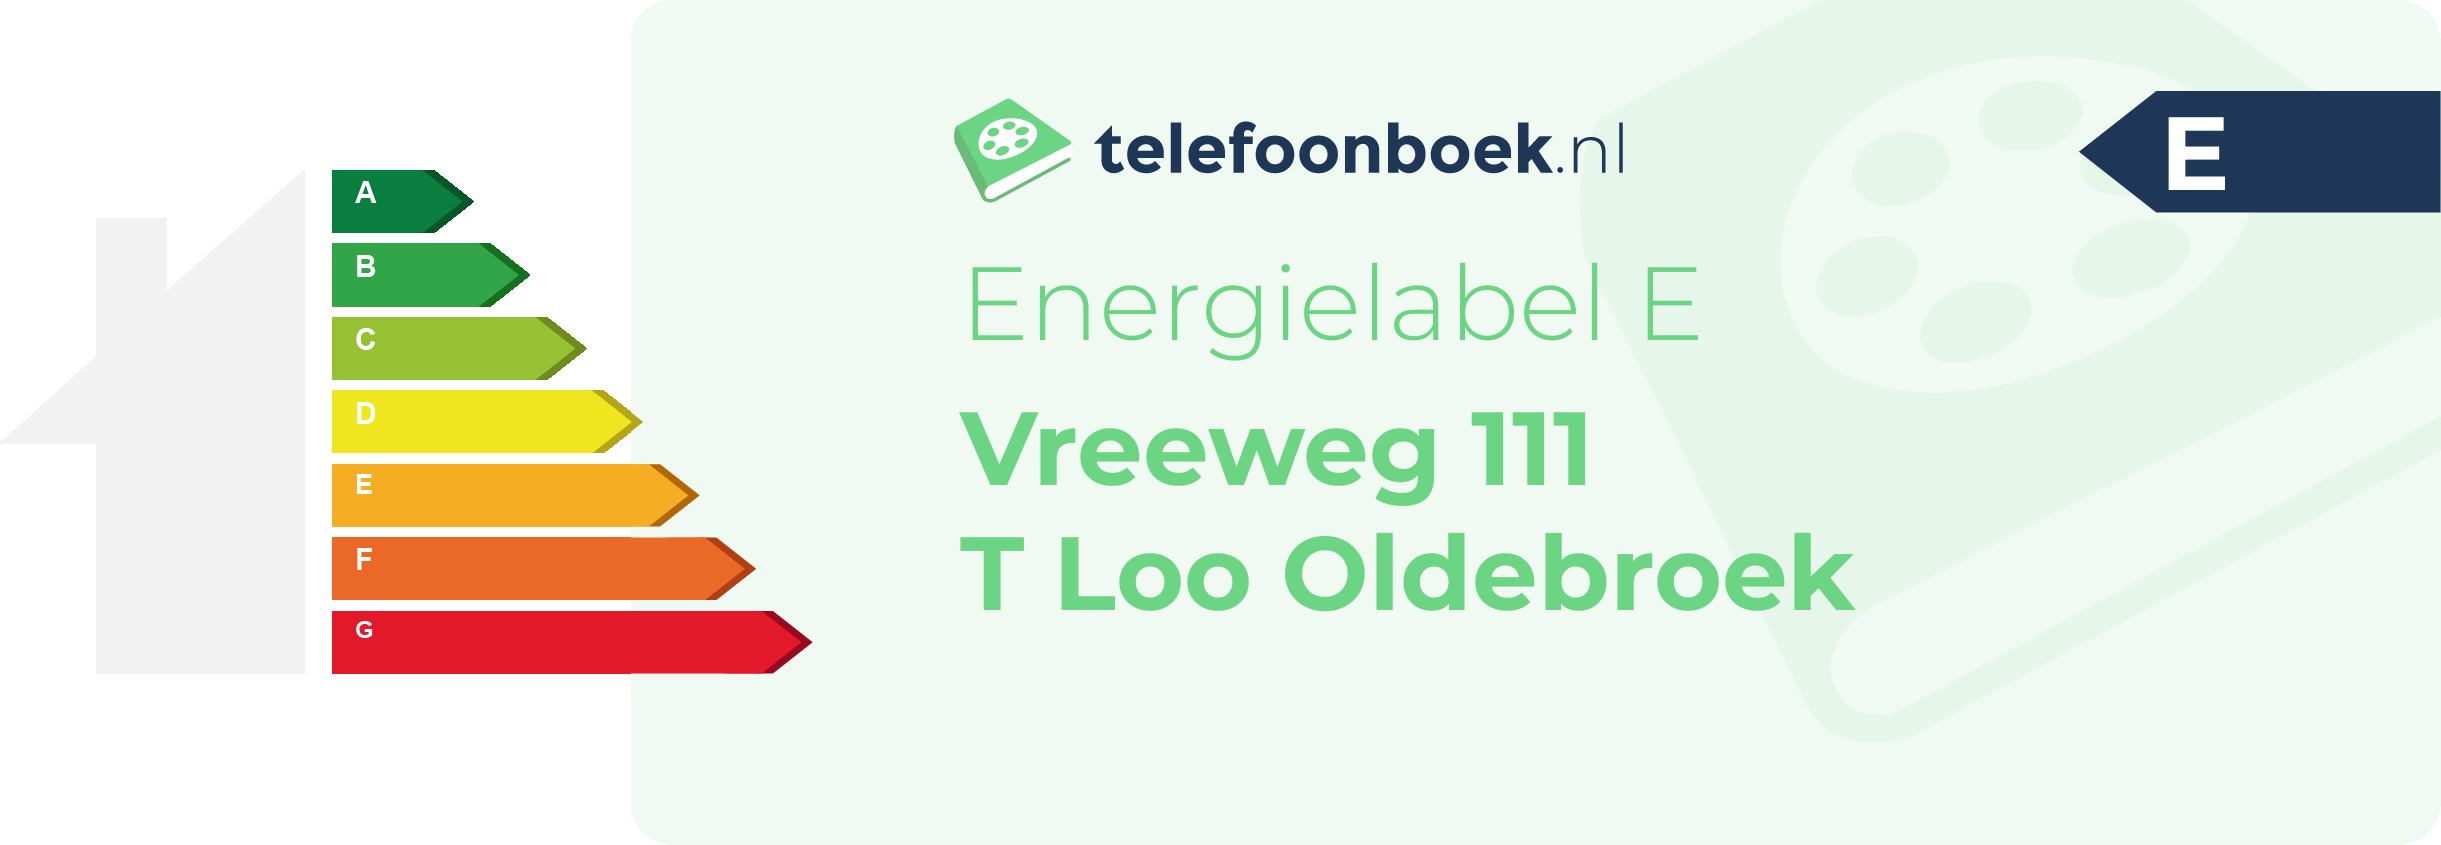 Energielabel Vreeweg 111 T Loo Oldebroek